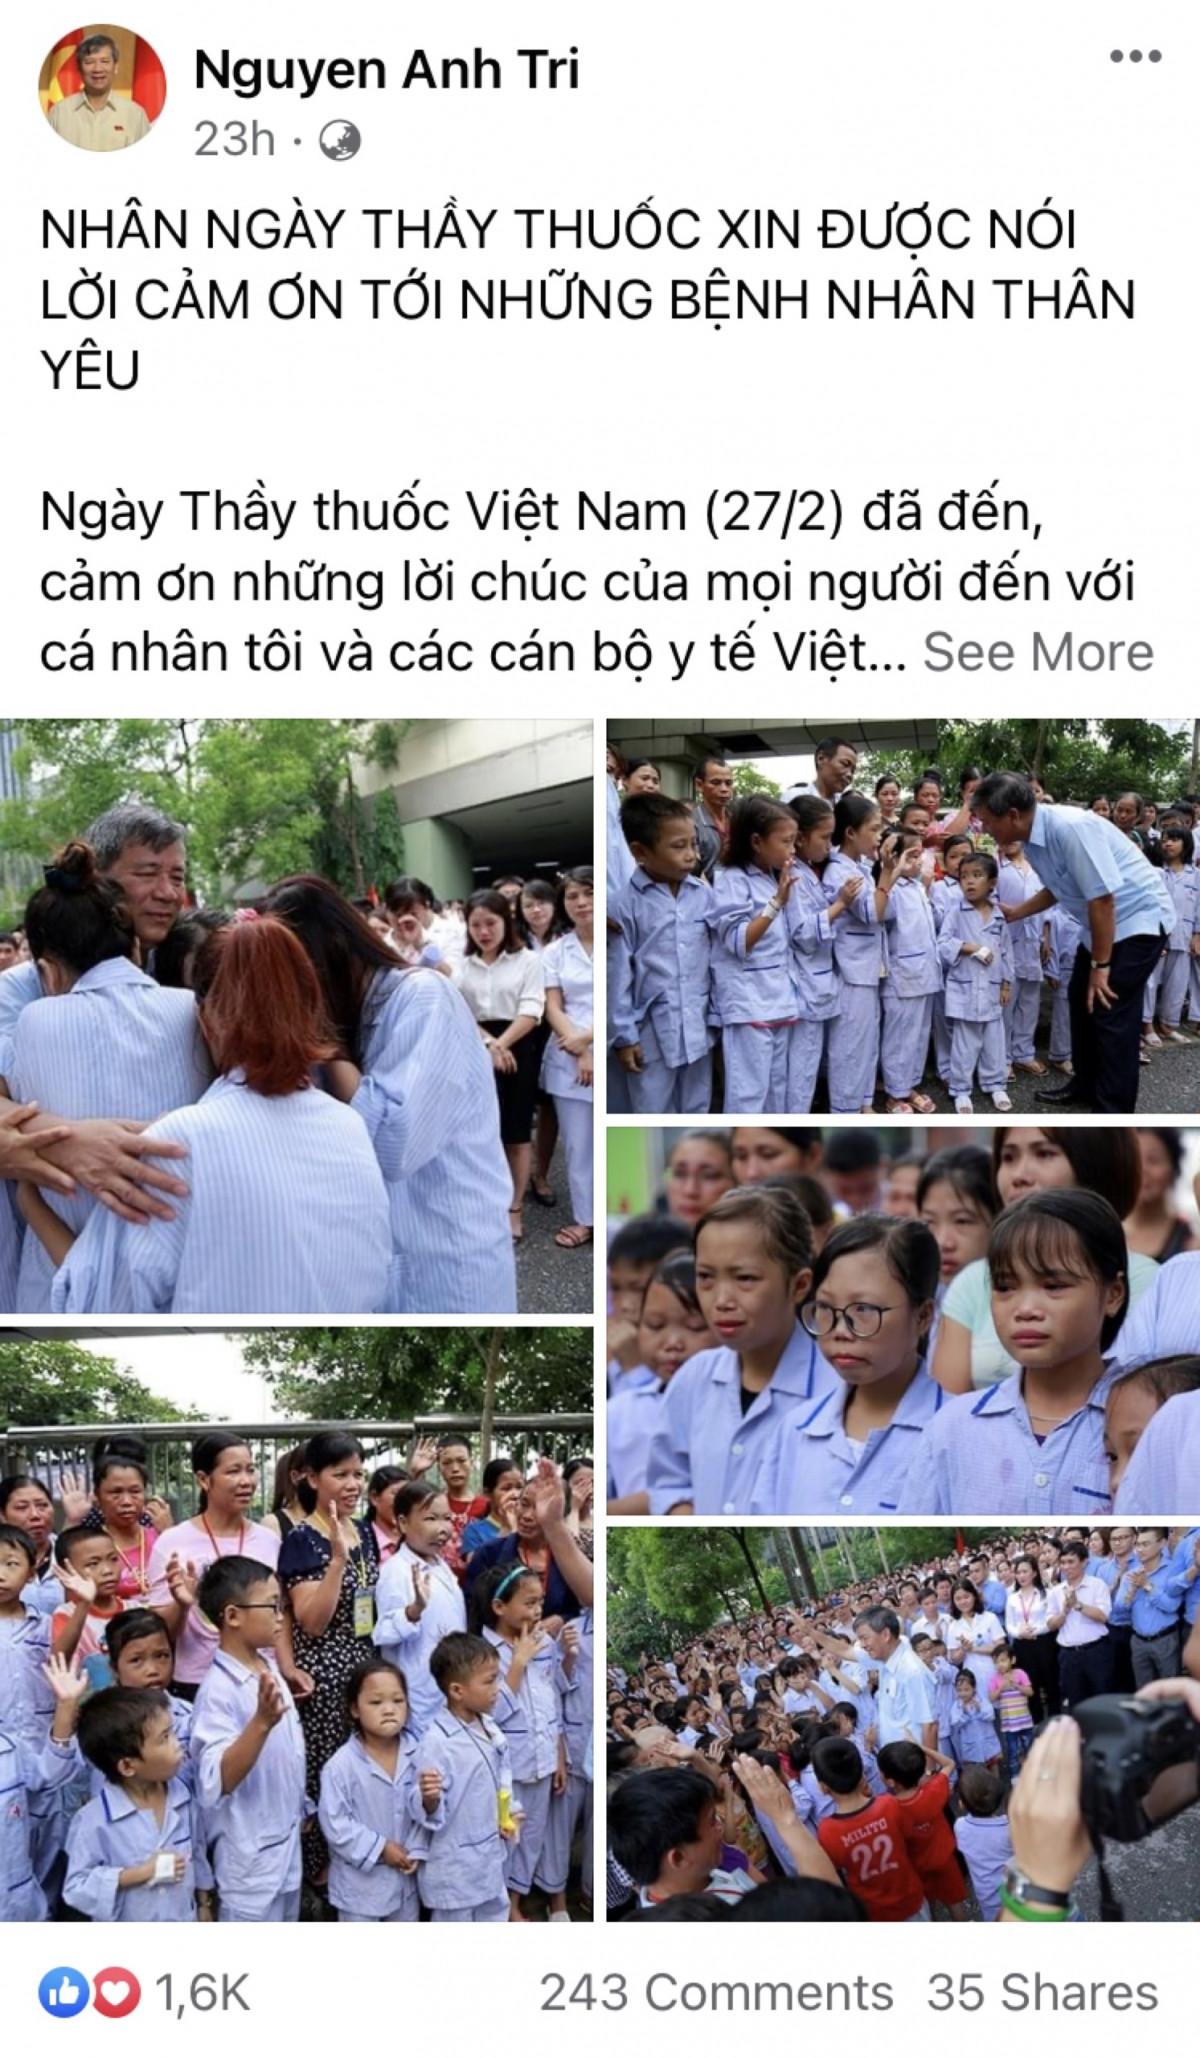 Trên trang Facebook cá nhân của GS-TS, AHLĐ Nguyễn Anh Trí, nguyên Viện trưởng Viện Huyết học - Truyền máu Trung ương có bài viết xúc động nhân Ngày Thầy thuốc Việt Nam.